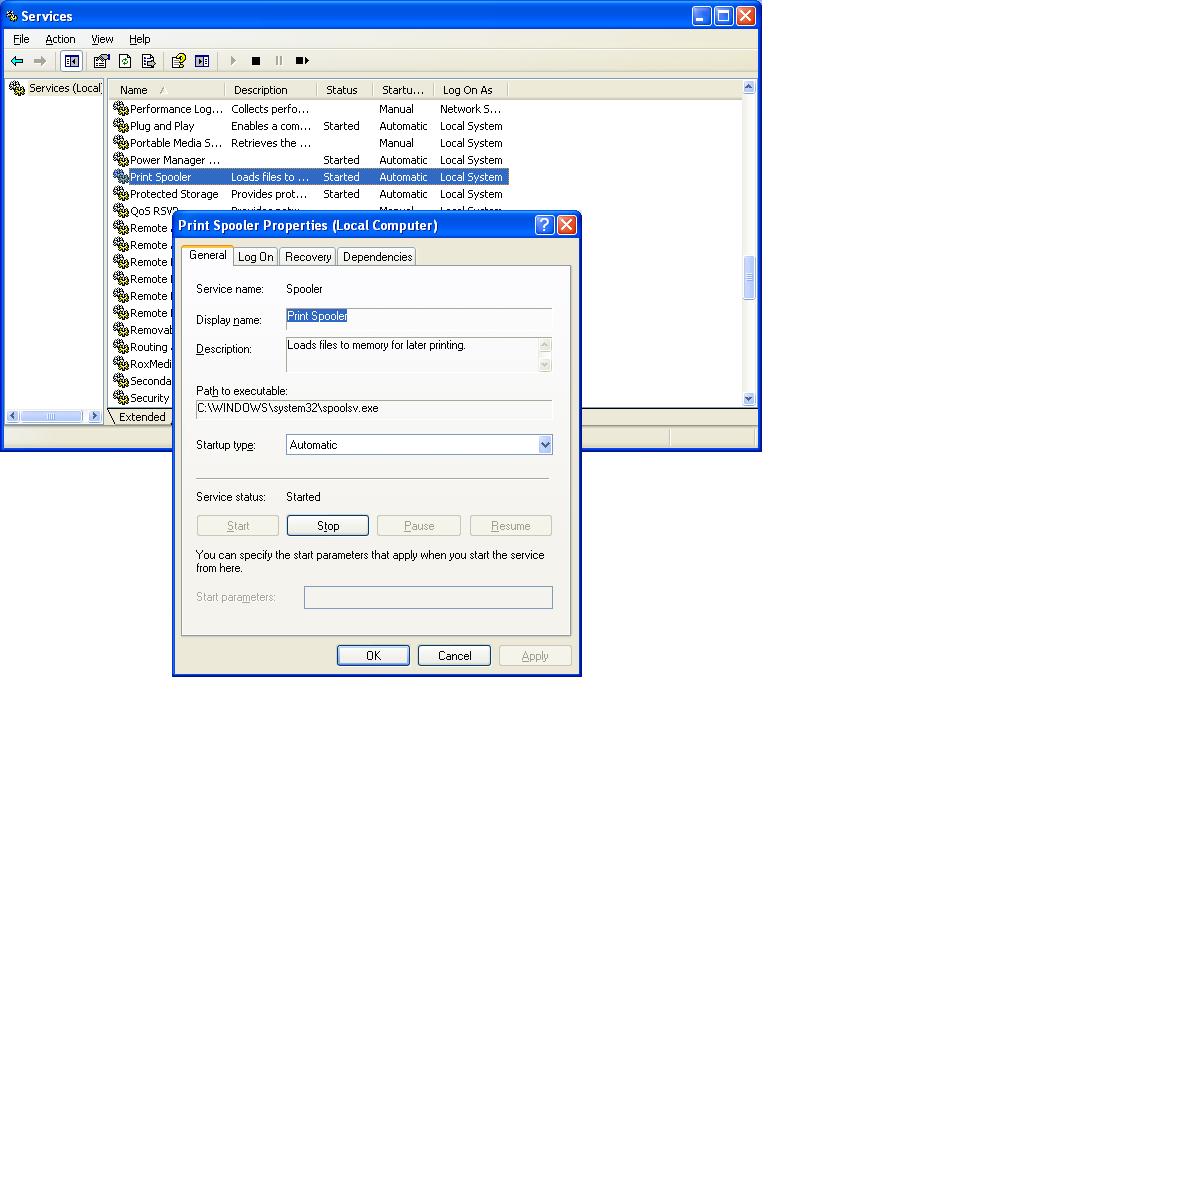 Windows XP Services Console - View Service Details